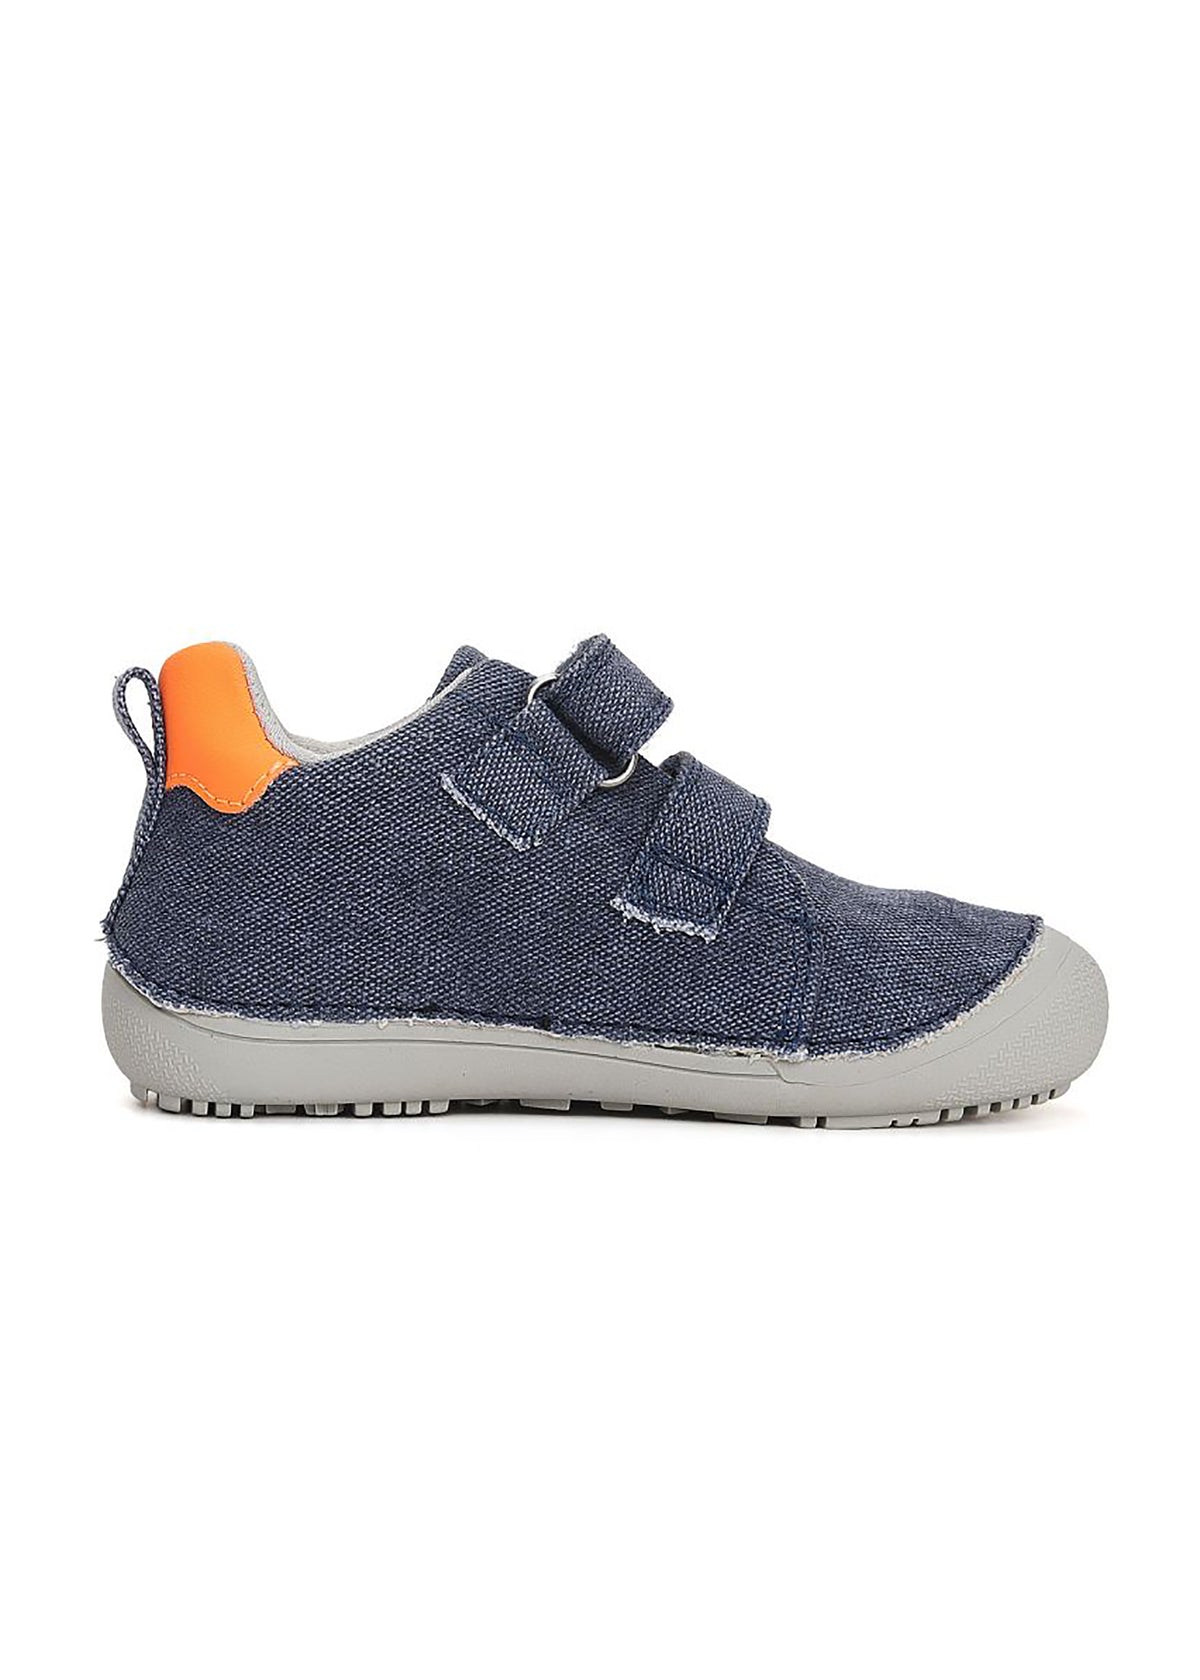 Children's barefoot sneakers - Denim blue canvas, orange-silver flash